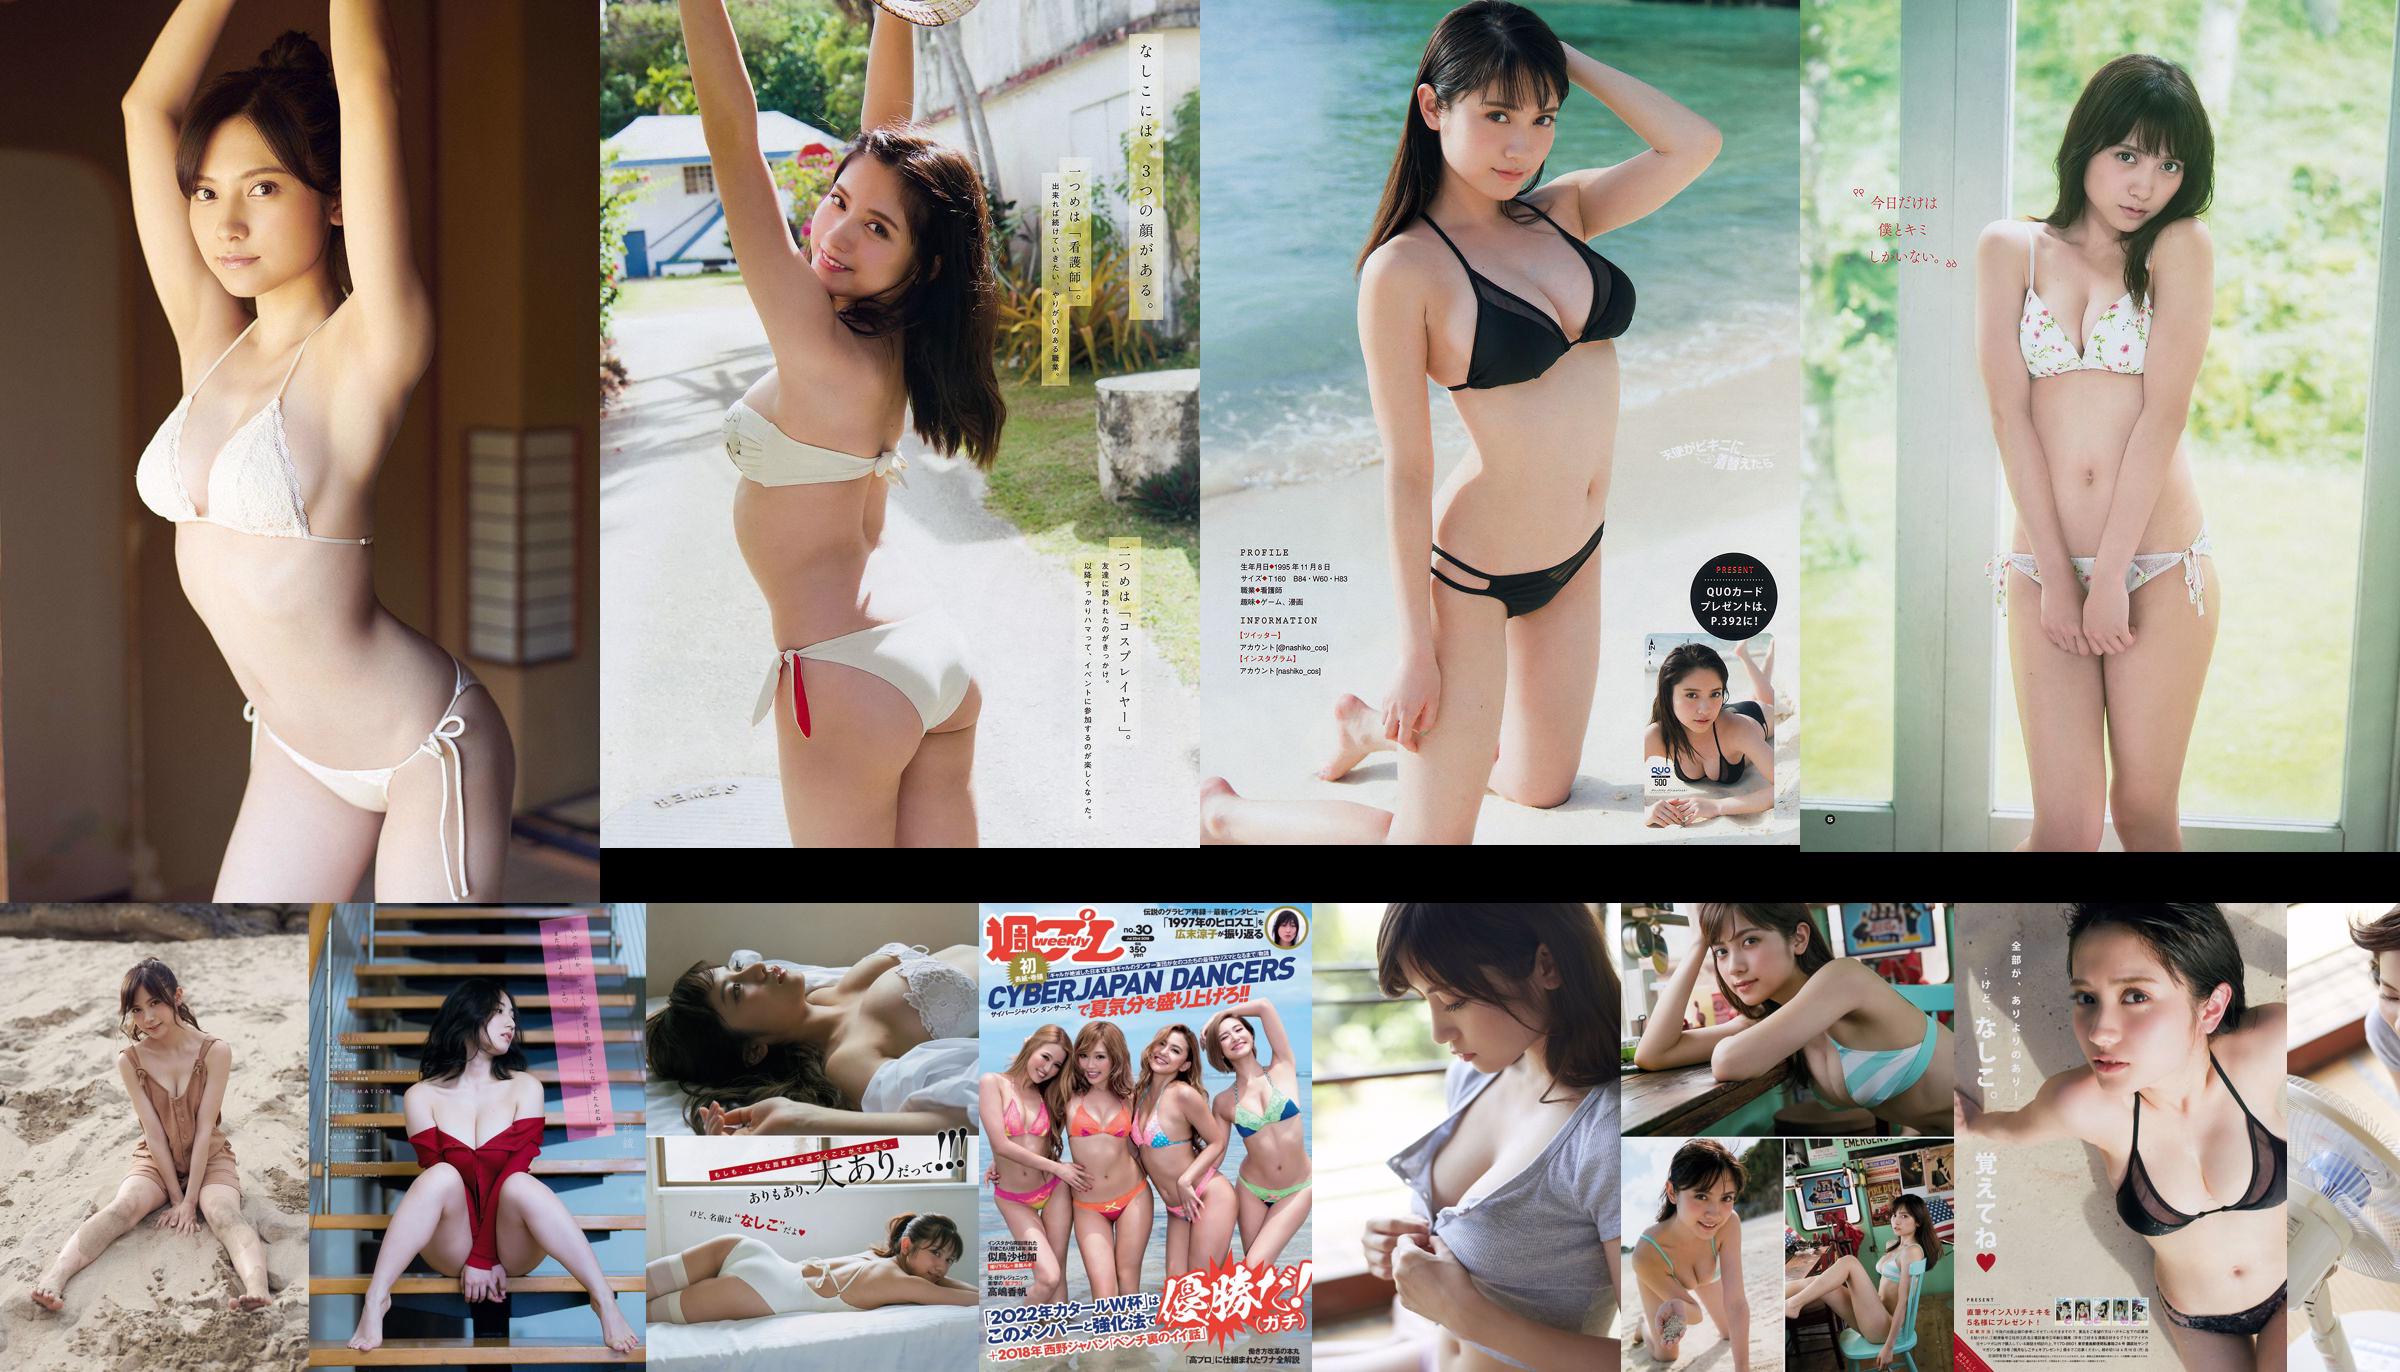 [FLASH] Nashiko Momotsuki Yua Shinkawa Banbi Watanabe Fujiko Kojima Miu Nakamura 2018.06.19 Photo Moshi No.7a87d2 Page 5